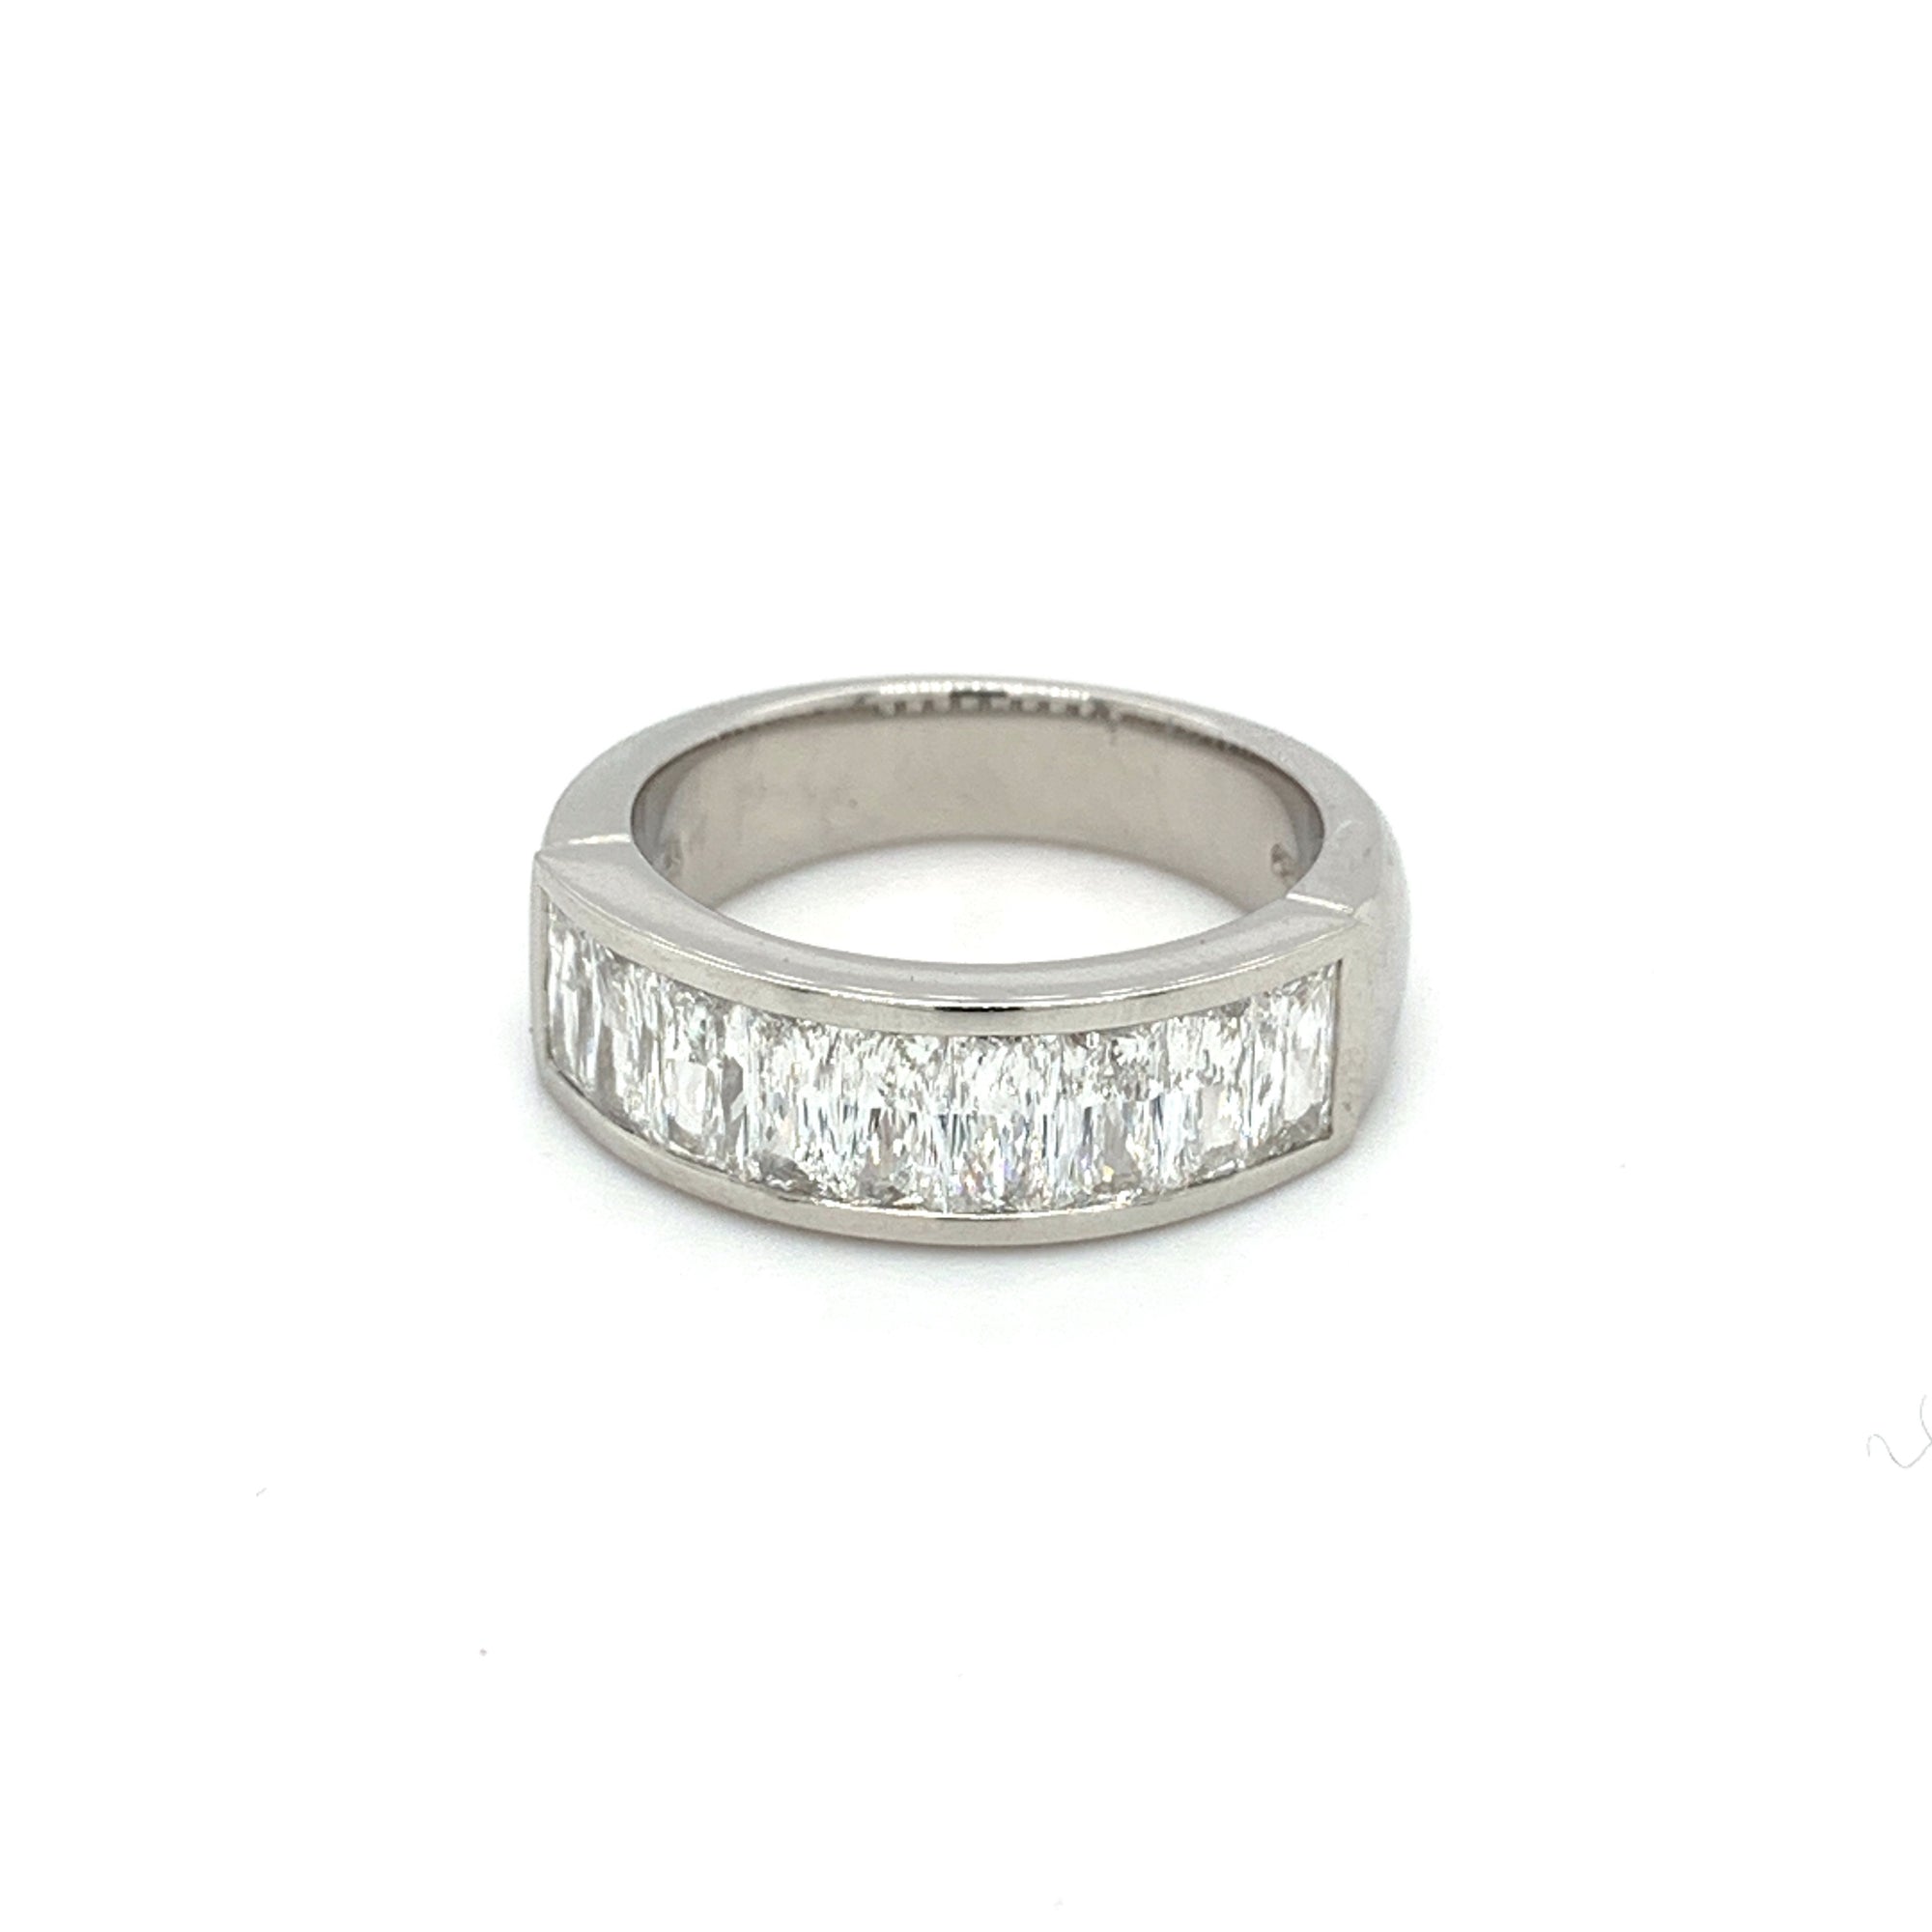 1.79ct scissor cut diamond ring, platinum, G/H colour, SI clarity